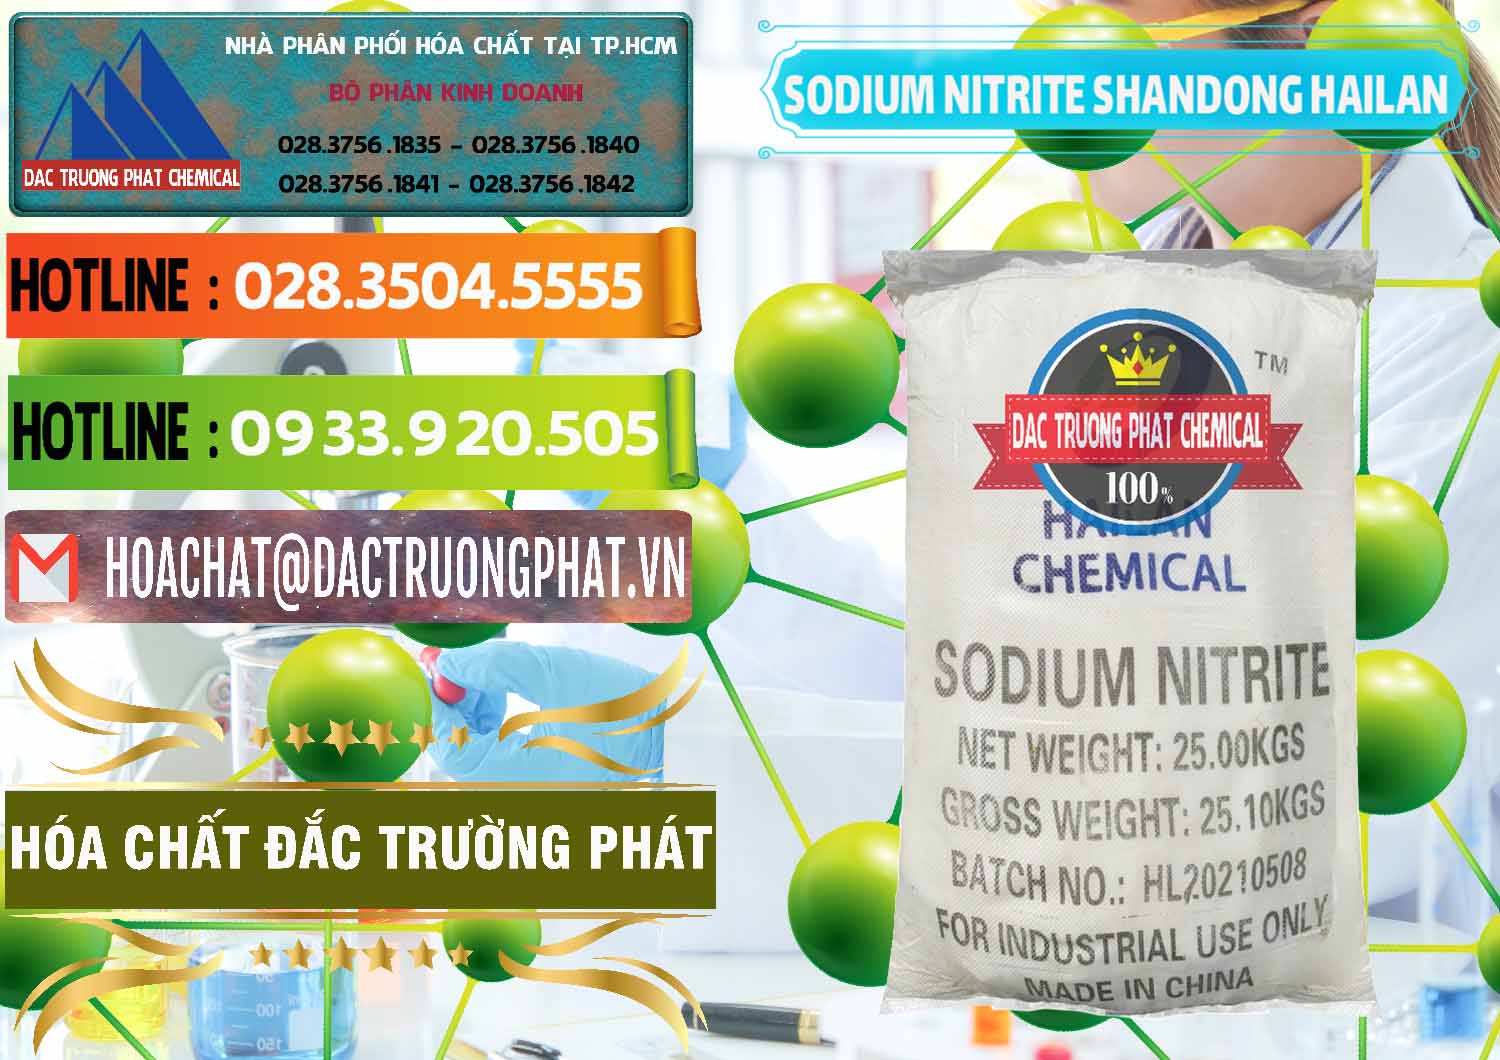 Đơn vị chuyên kinh doanh và bán Sodium Nitrite - NANO2 99.3% Shandong Hailan Trung Quốc China - 0284 - Nơi chuyên cung cấp ( nhập khẩu ) hóa chất tại TP.HCM - cungcaphoachat.com.vn